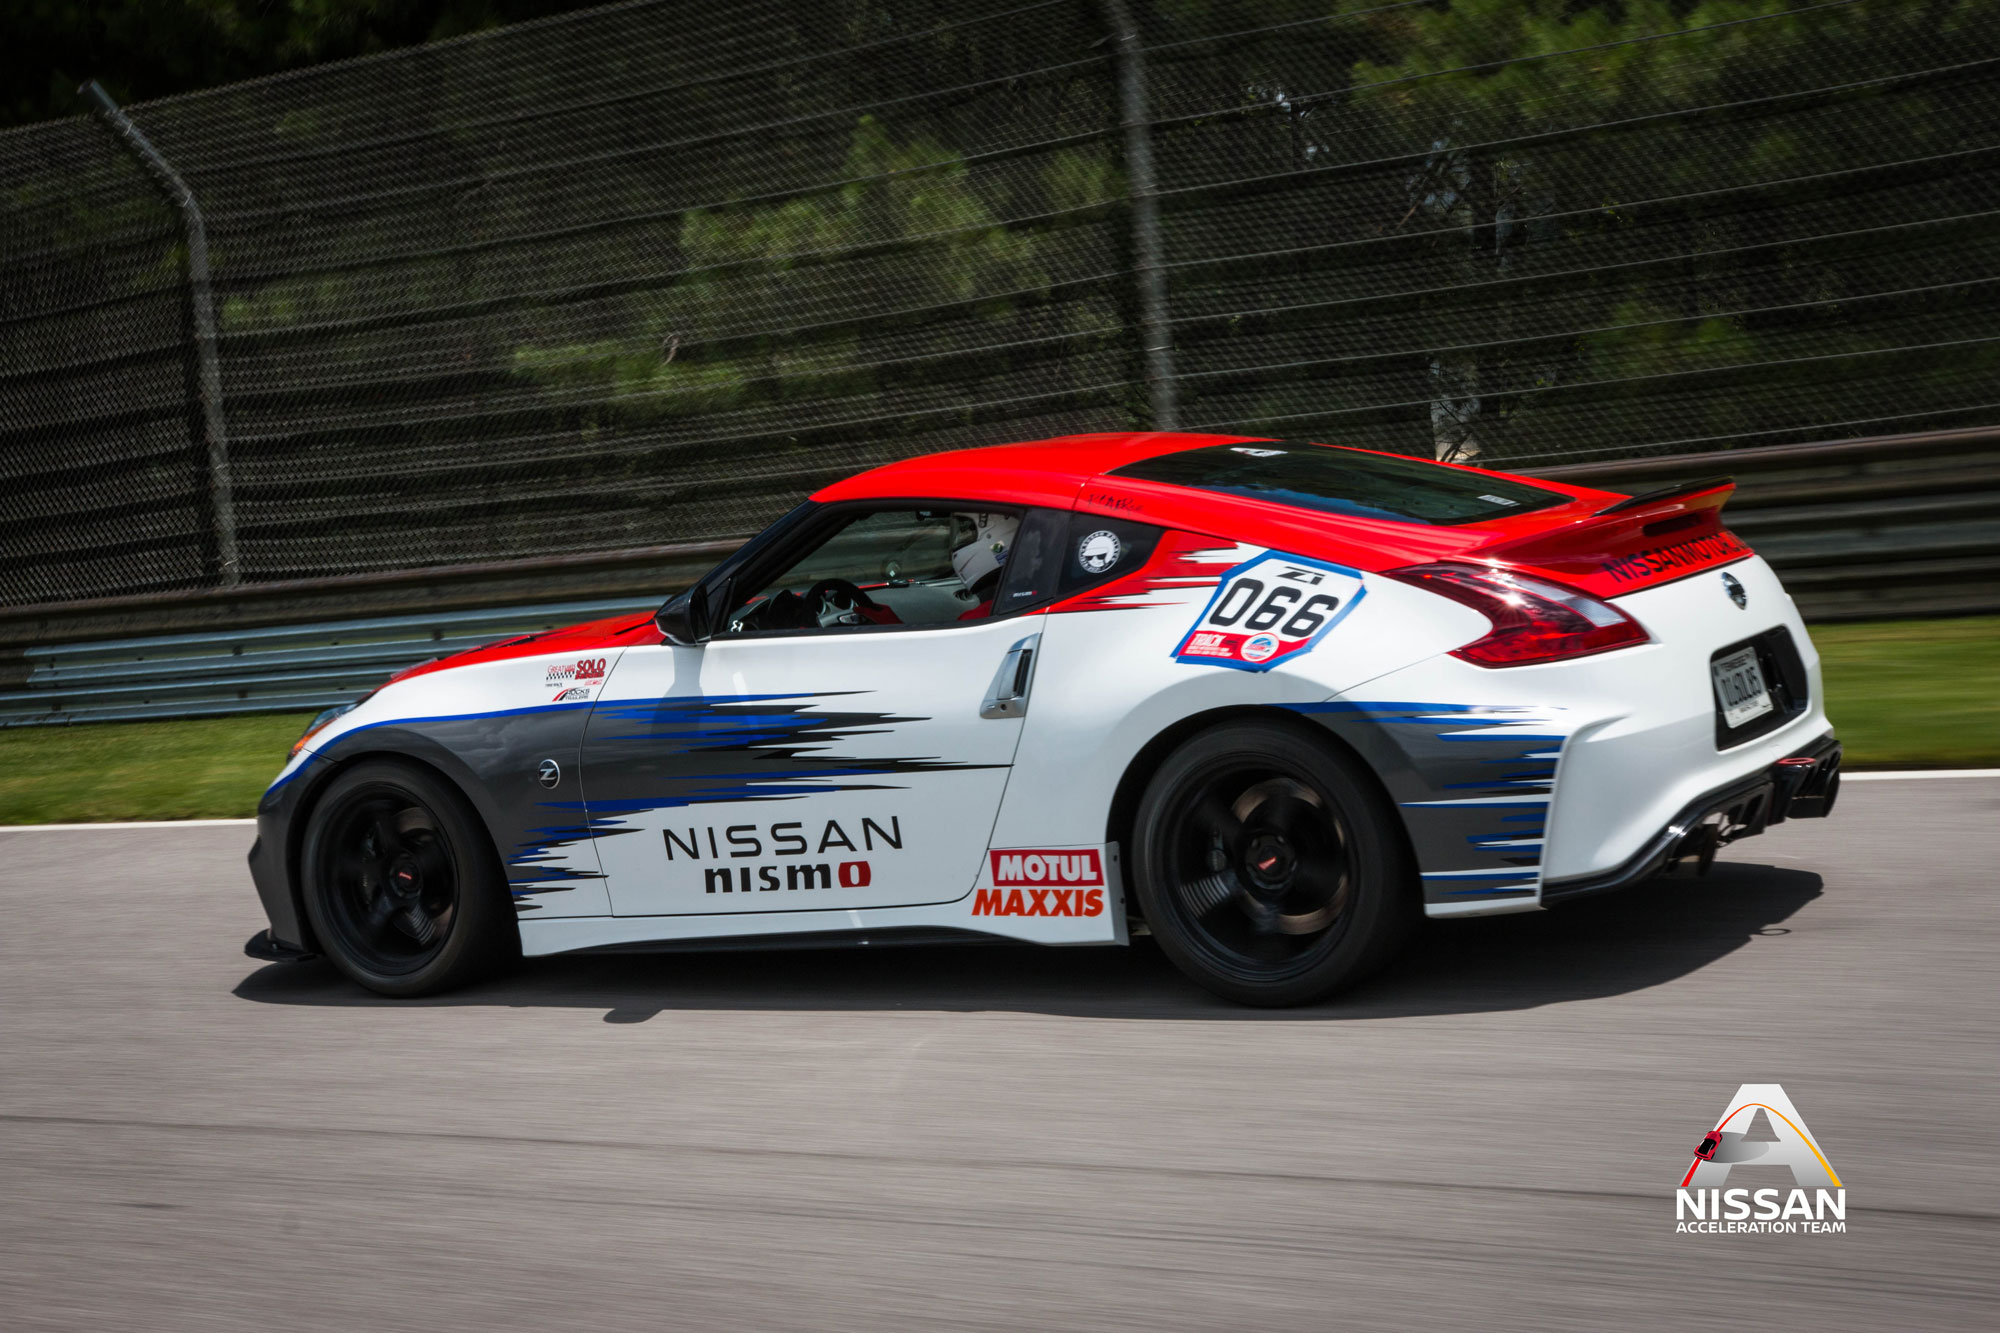 Nissan car racing